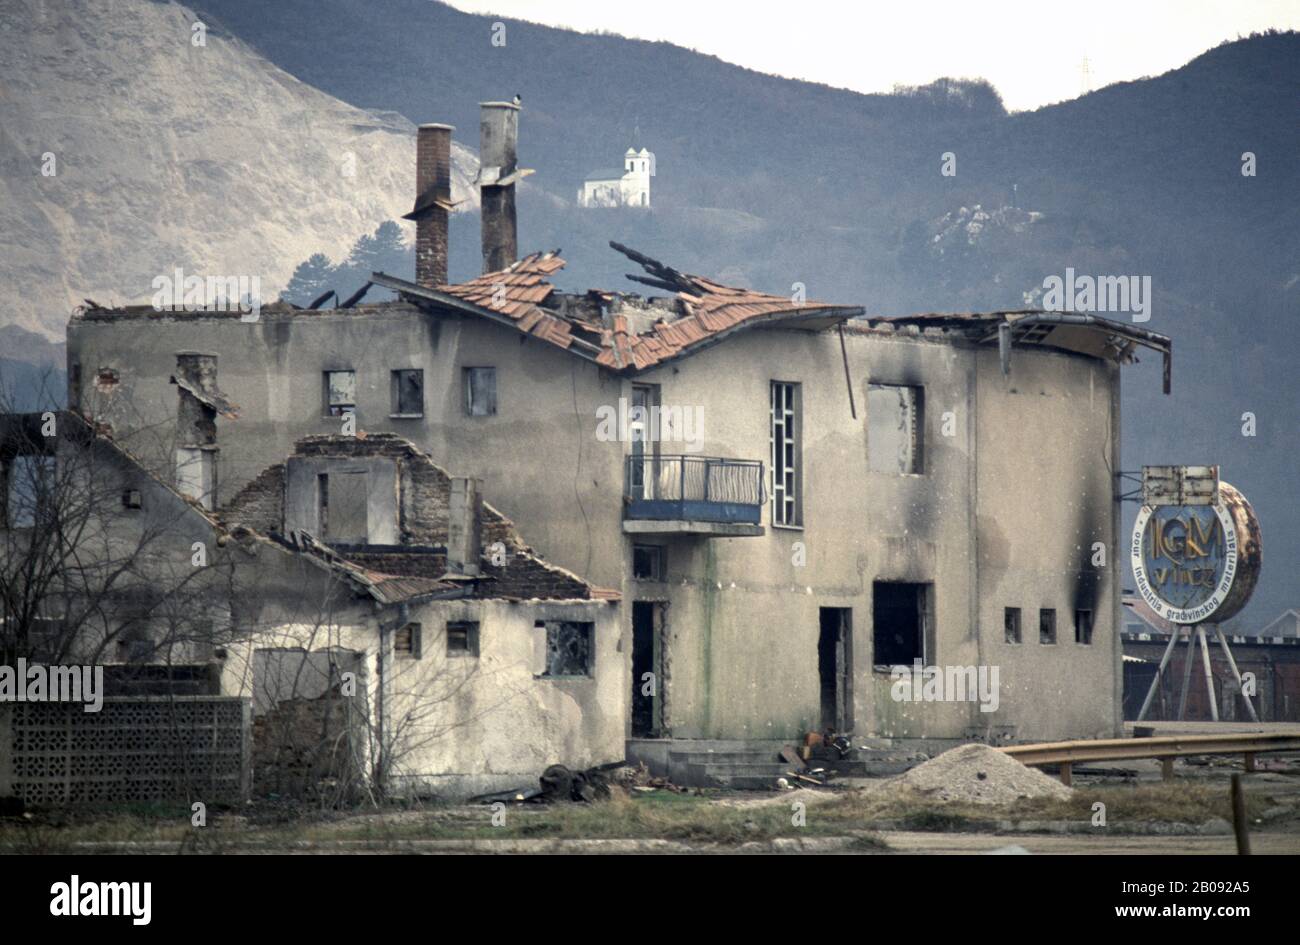 8th gennaio 1994 pulizia Etnica durante la guerra nella Bosnia centrale: Case e edifici bruciati a Grbavica, alla periferia di Vitez, aggrediti dalle forze dell'UAV (croato bosniaco) quattro mesi prima. Foto Stock